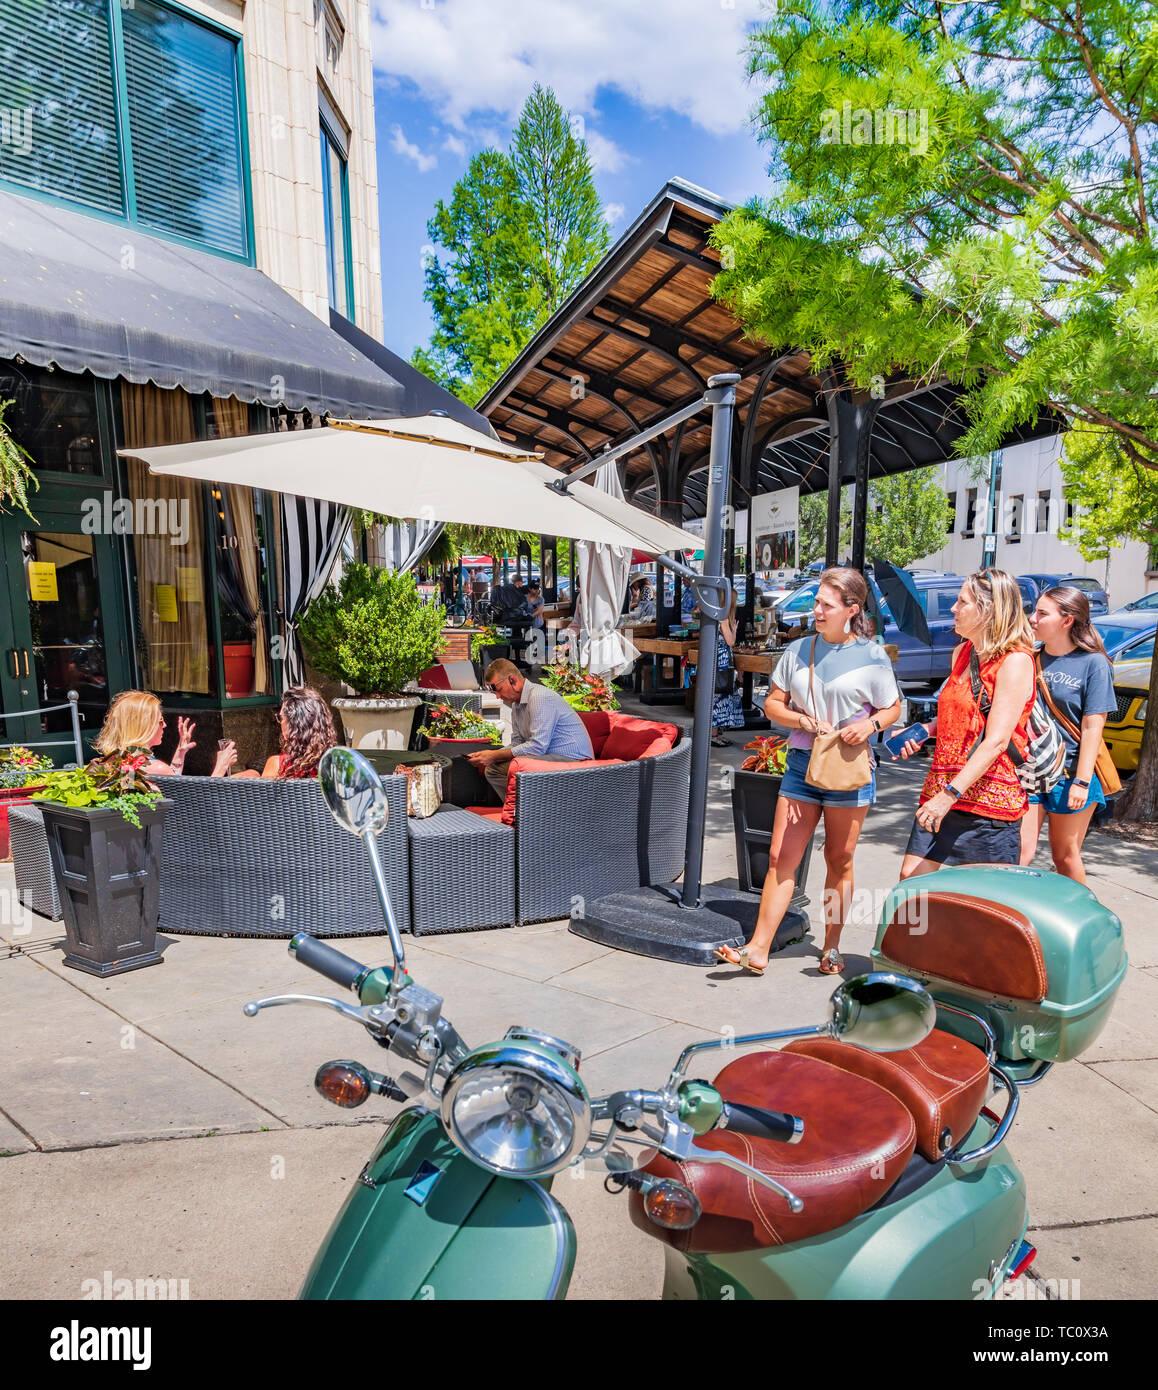 ASHEVILLE, NC, USA-5/31/19 : Personnes shopping et détente à l'extérieur en lieu sur Battery Park Ave., avec classic scooter vert menthe en premier plan. Banque D'Images